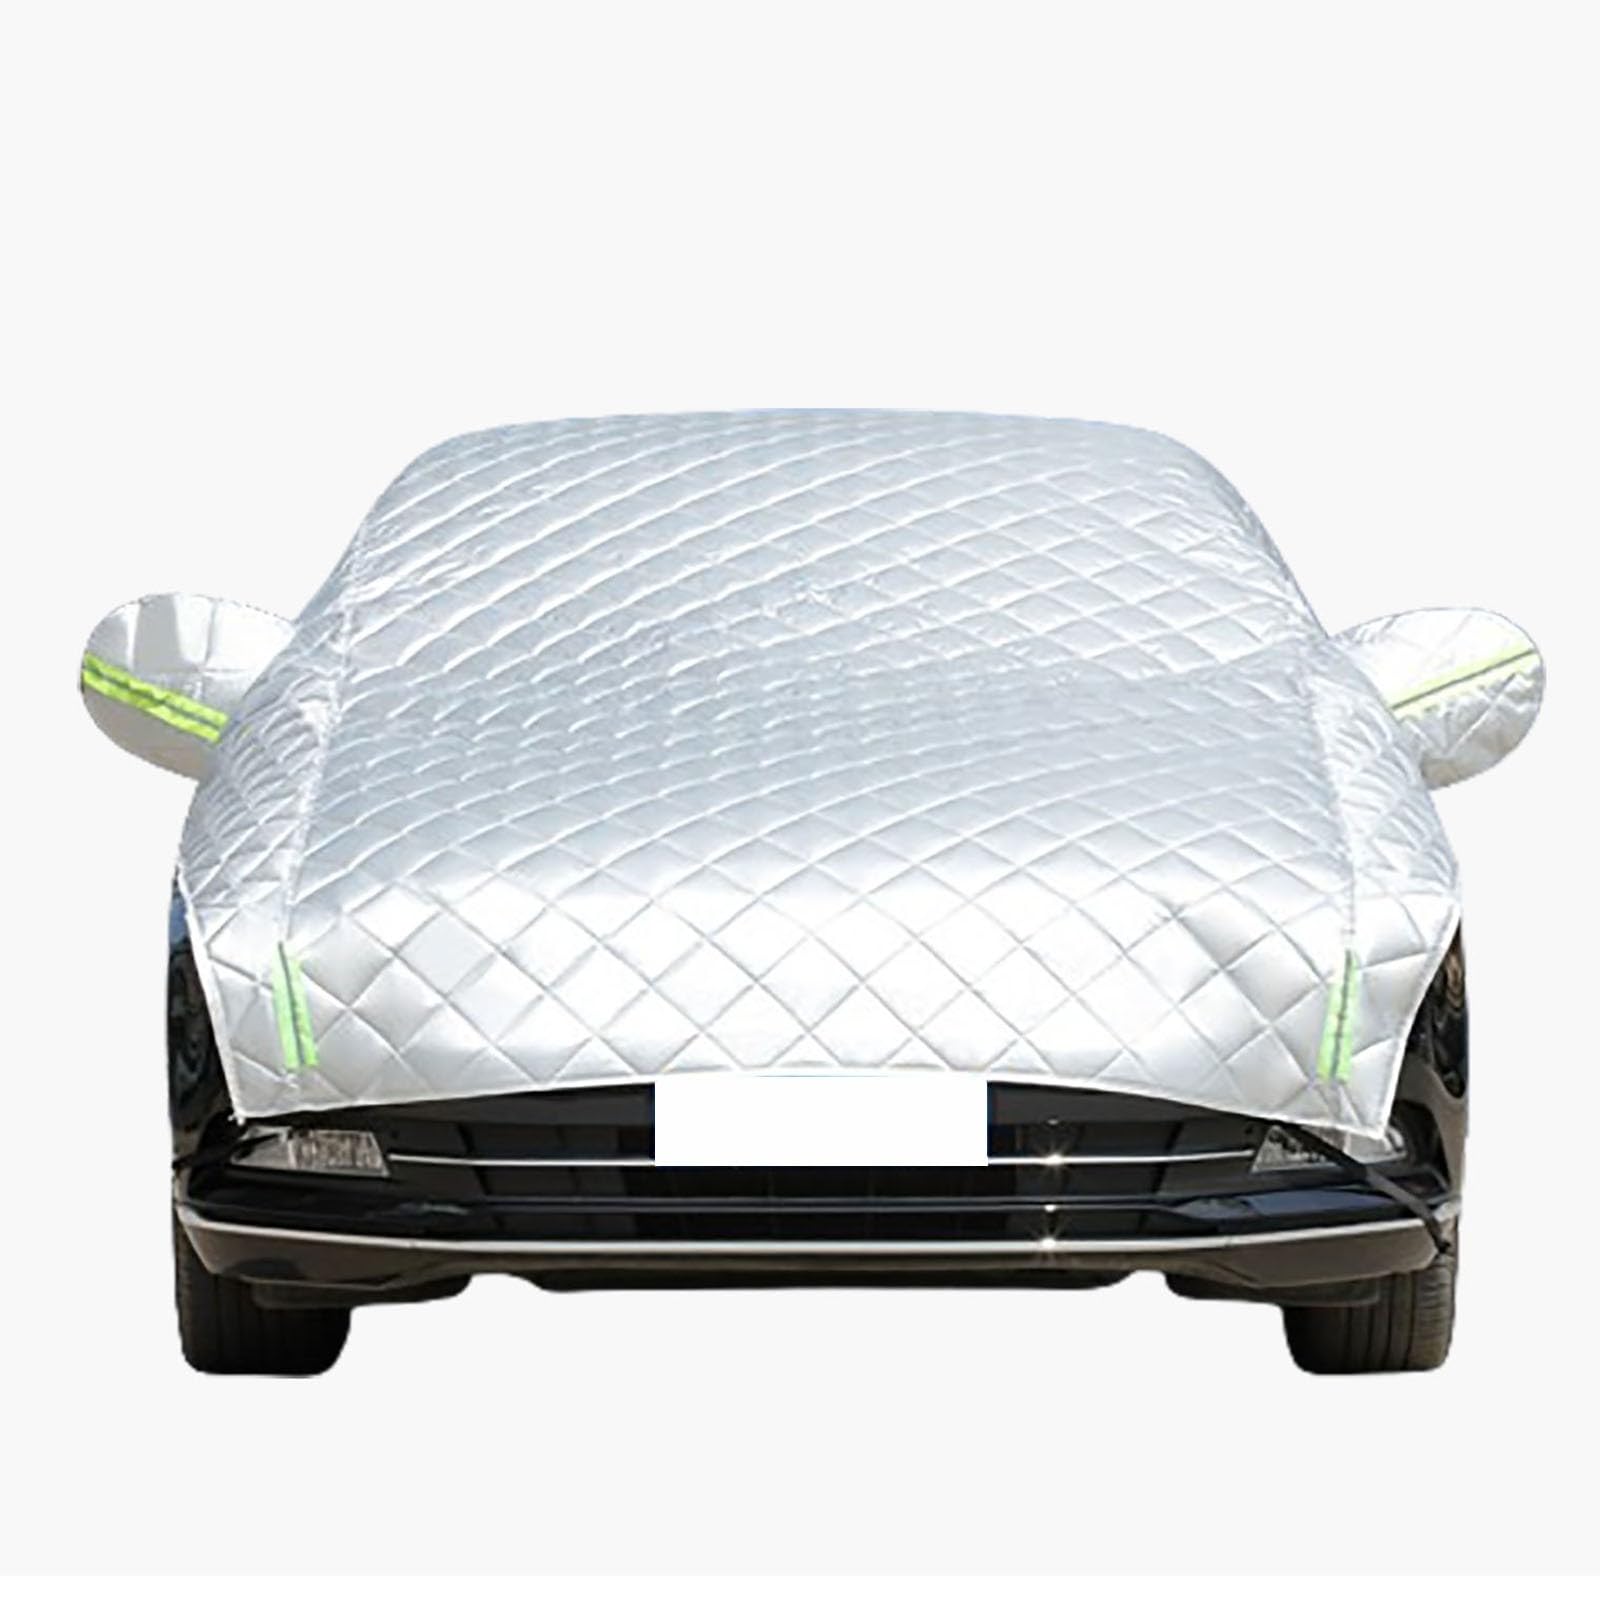 Hagelschutz Auto Abdeckplane für Mazda CX-5 2012-2017 Autoabdeckung,hagelschutzplane Auto Universal Auto Abdeckung für Draußen,Staub,UV-Schutz,Regen und Sonnenschutz von FUNEAER